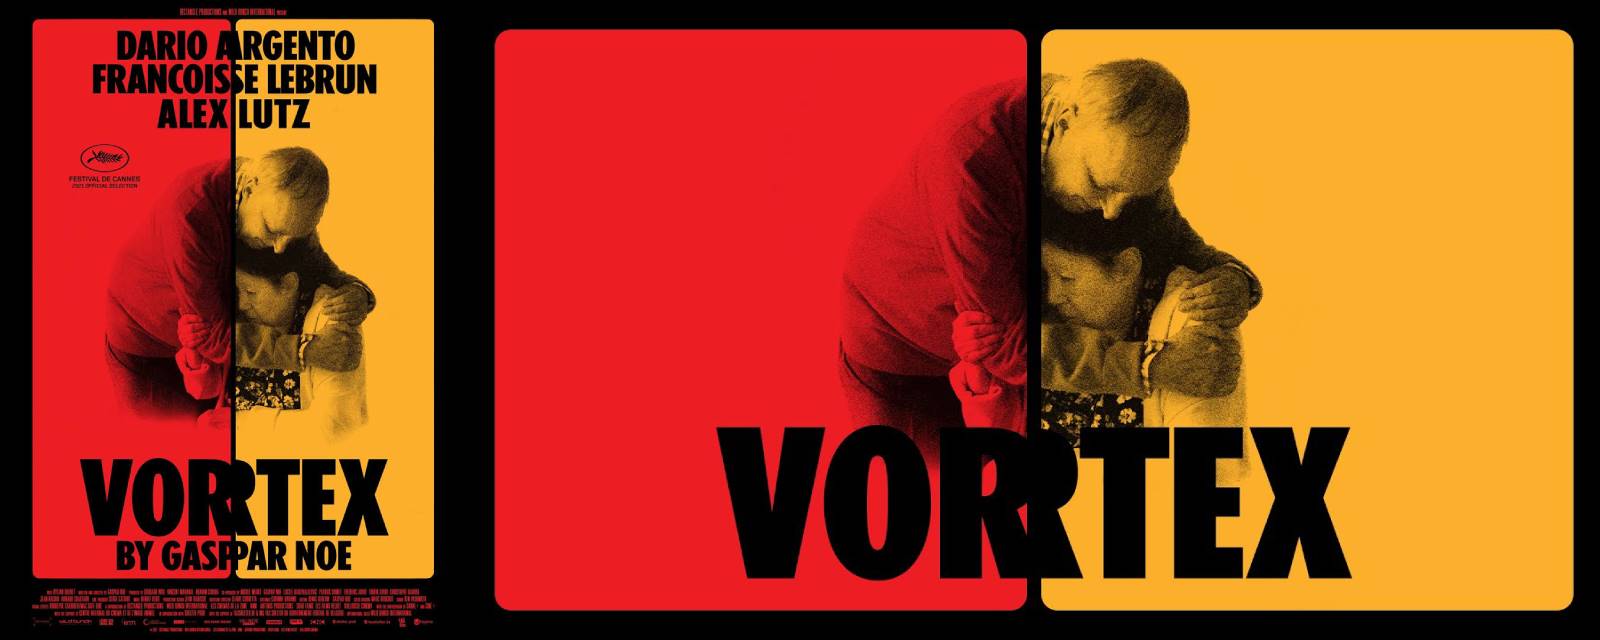 Vortex image